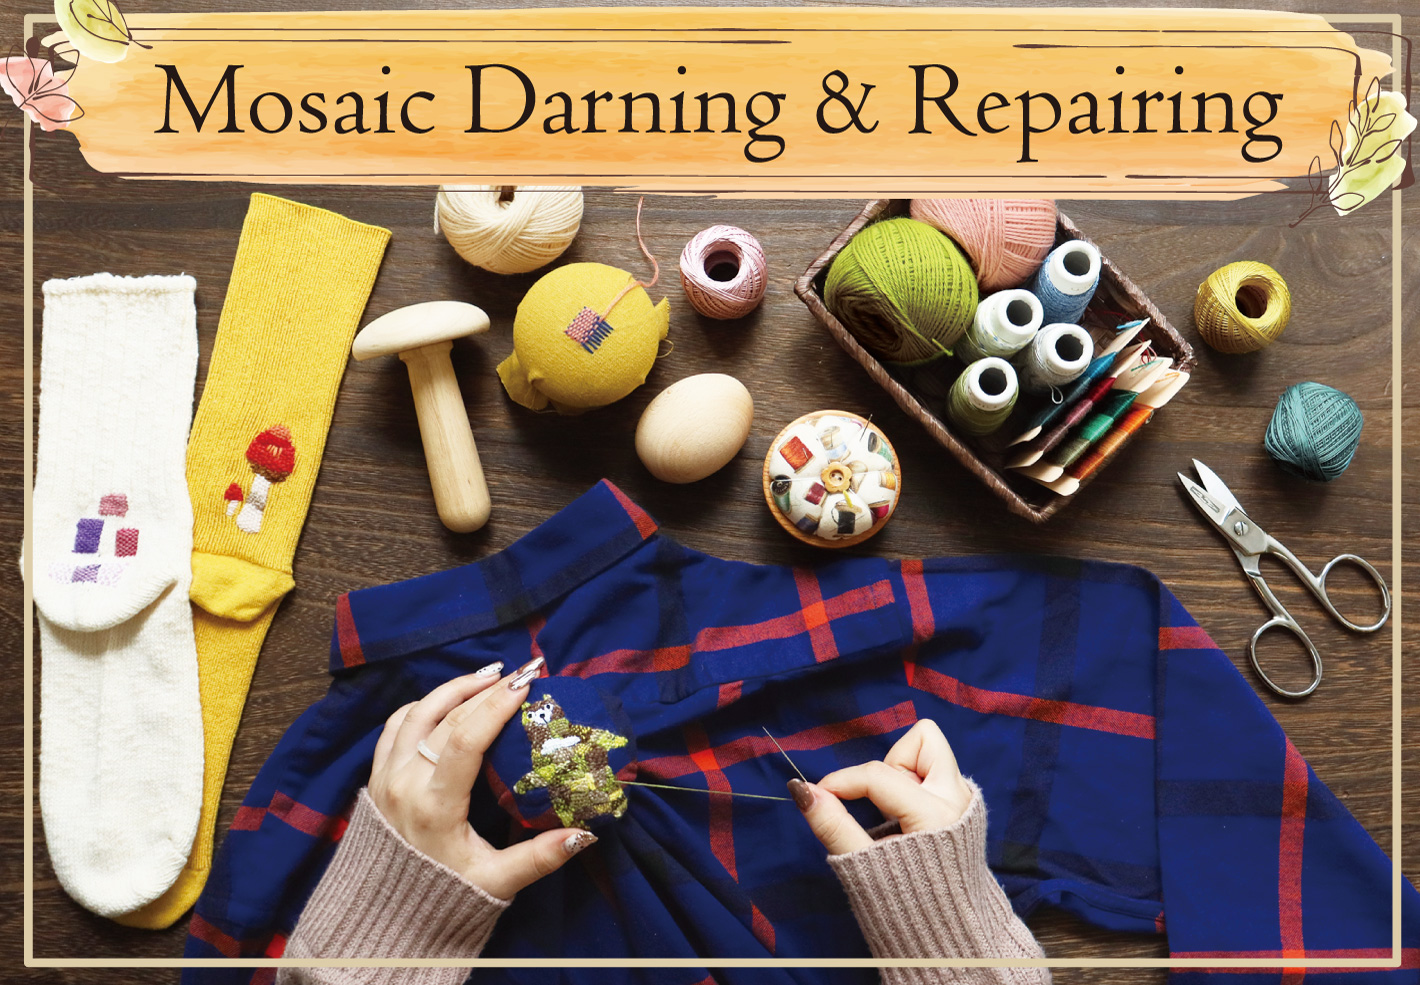 mosaic darning & Repair with darning